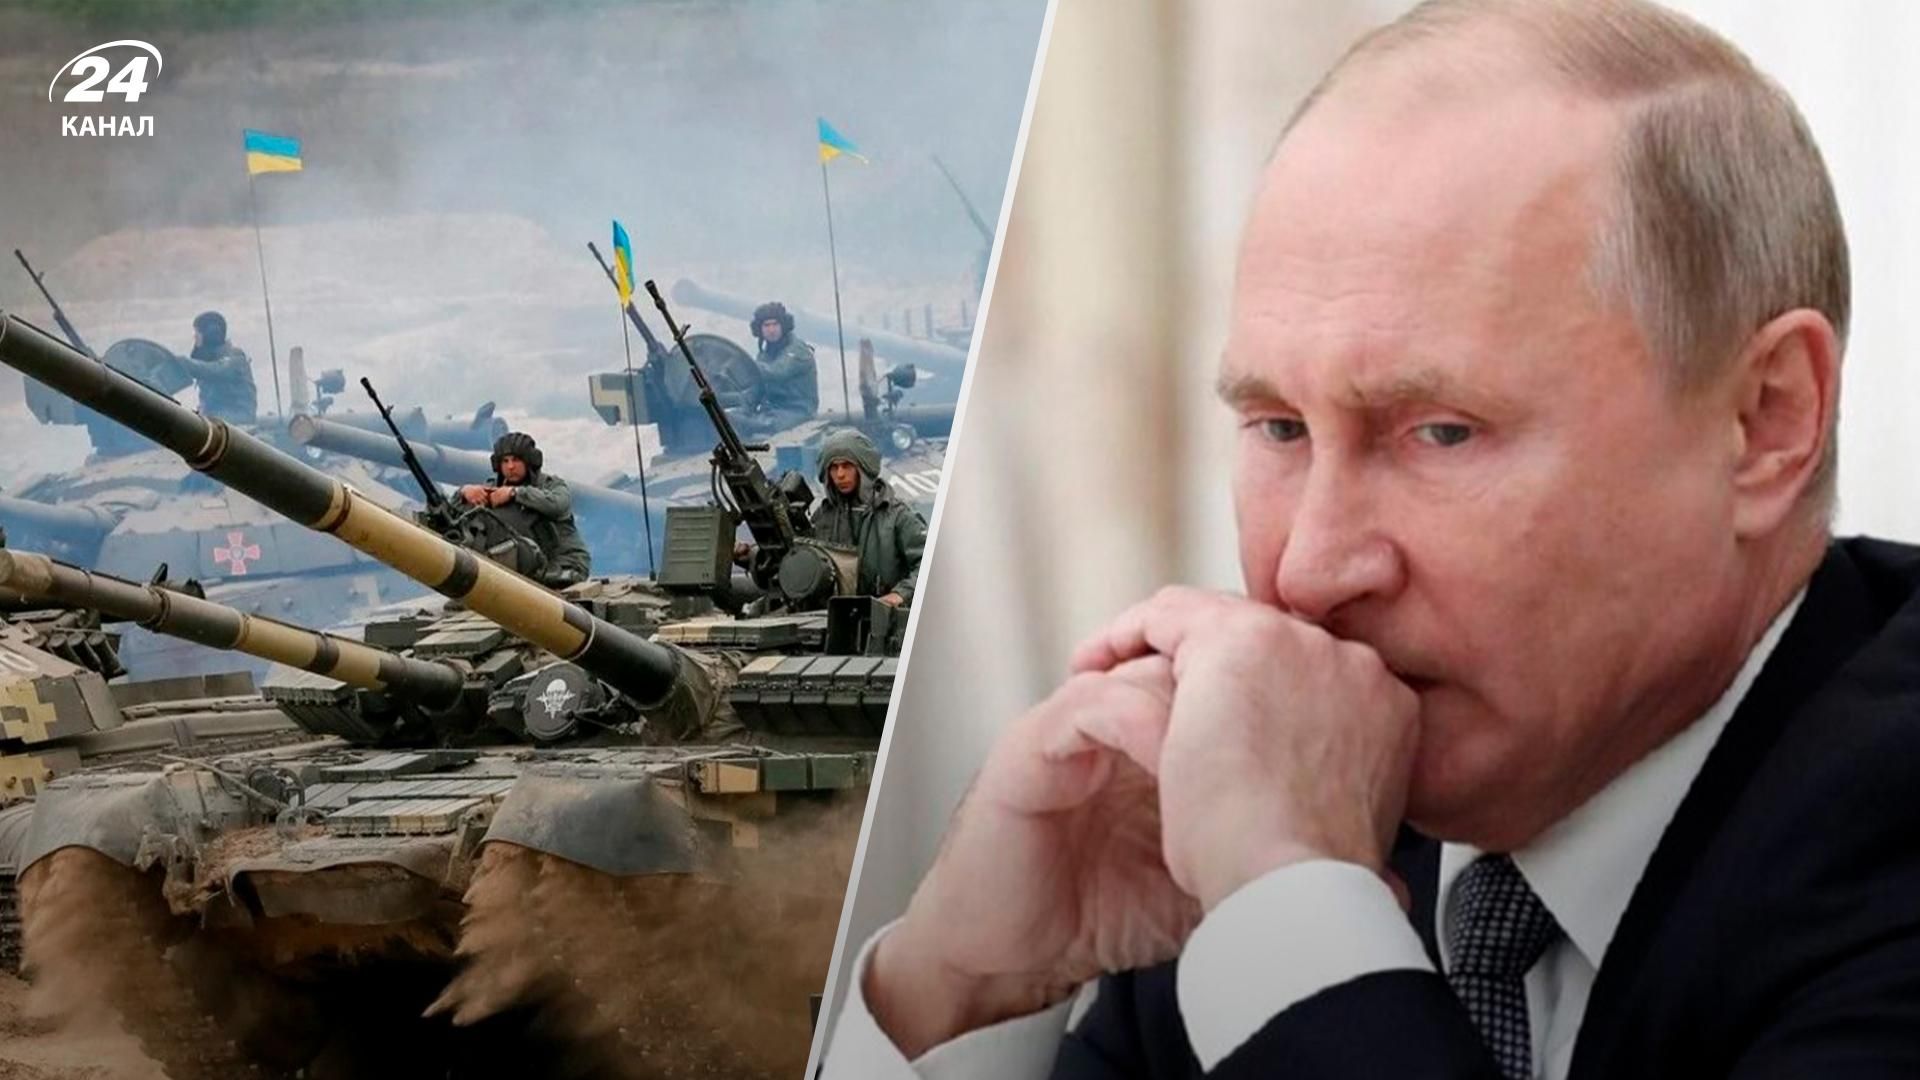 росії прогнозують провал на Донбасі: як кремль пояснюватиме це росіянам